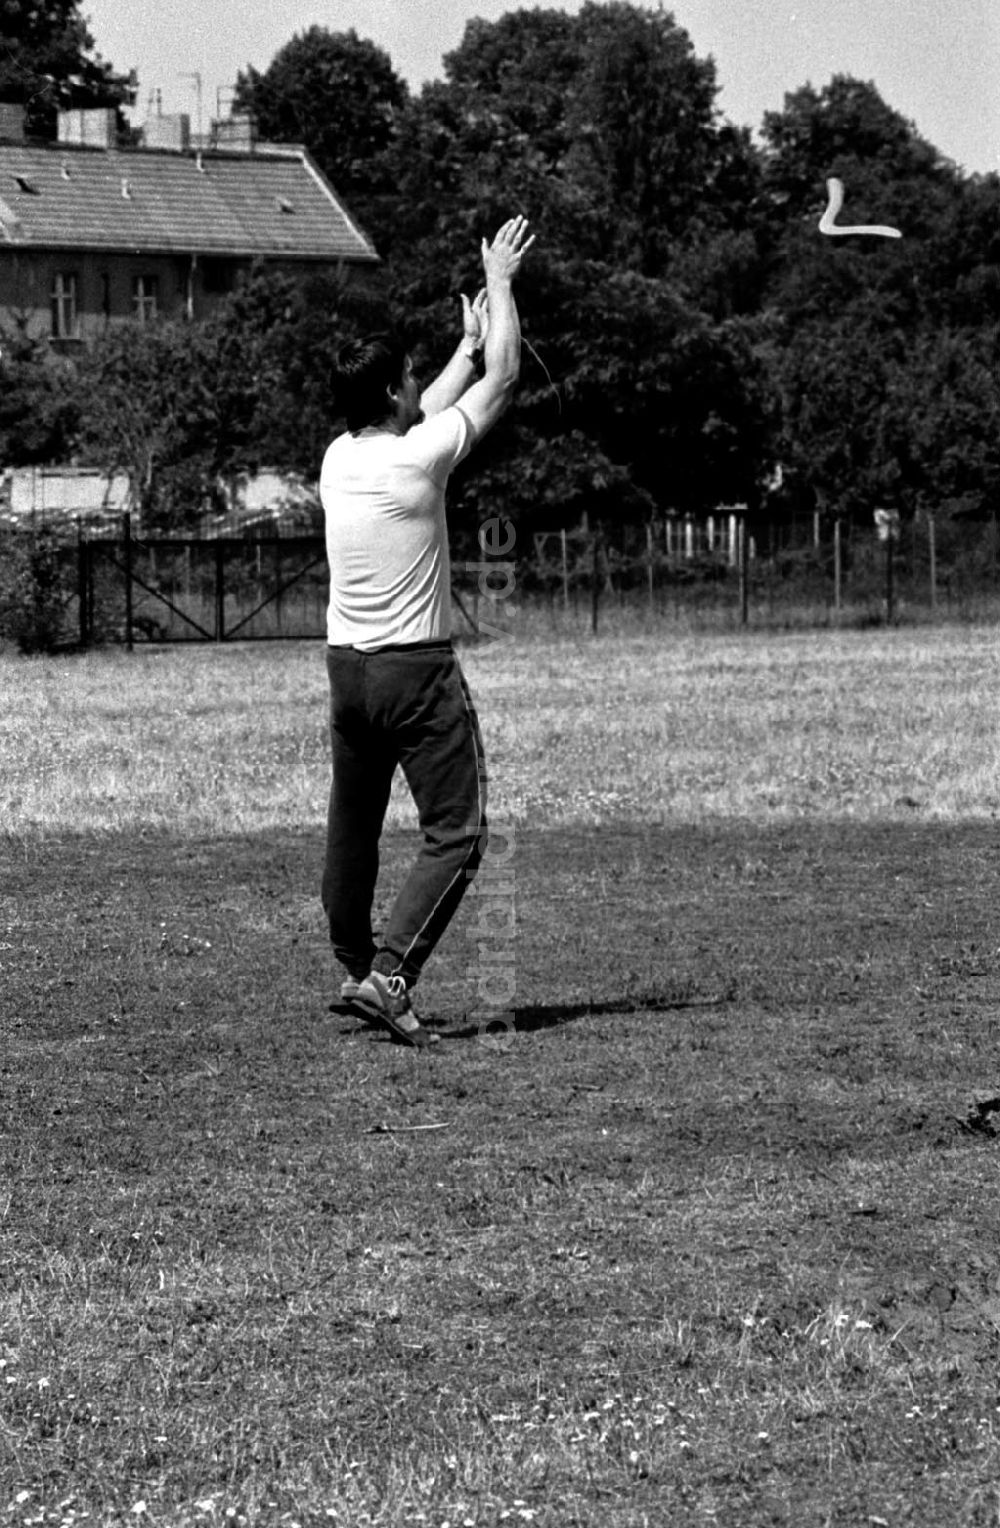 DDR-Bildarchiv: Berlin-Pankow - Bumerang-Freizeitsportler in Pankow, Charlottenstr. 23.07.89 Foto: ND/Grahn Umschlagnummer: 0872